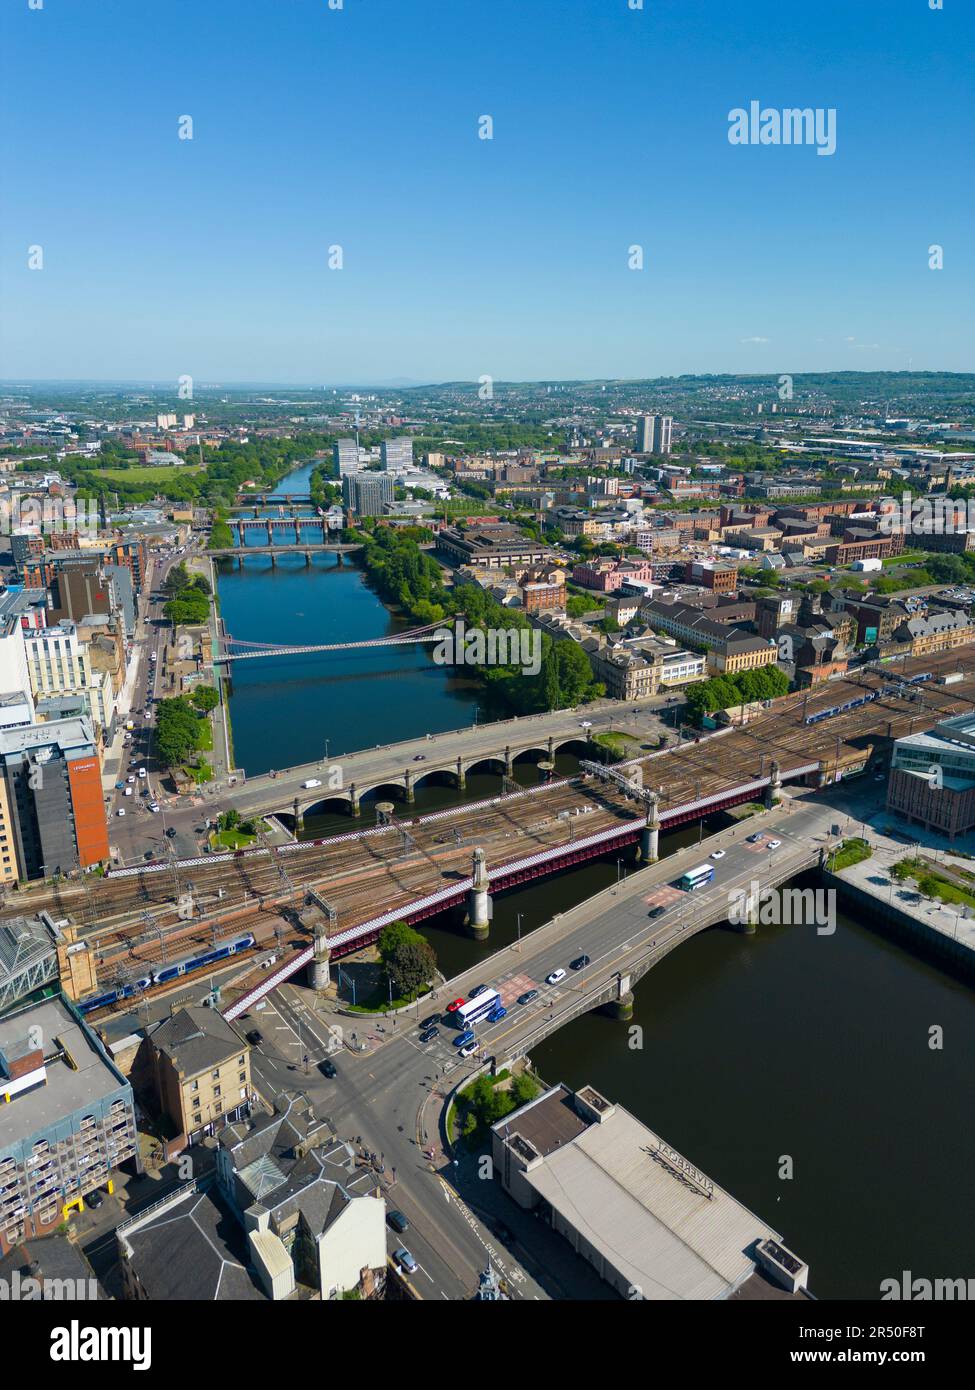 Vue aérienne depuis un drone de ponts routiers et ferroviaires traversant la rivière Clyde dans le centre-ville de Glasgow, Écosse, Royaume-Uni Banque D'Images